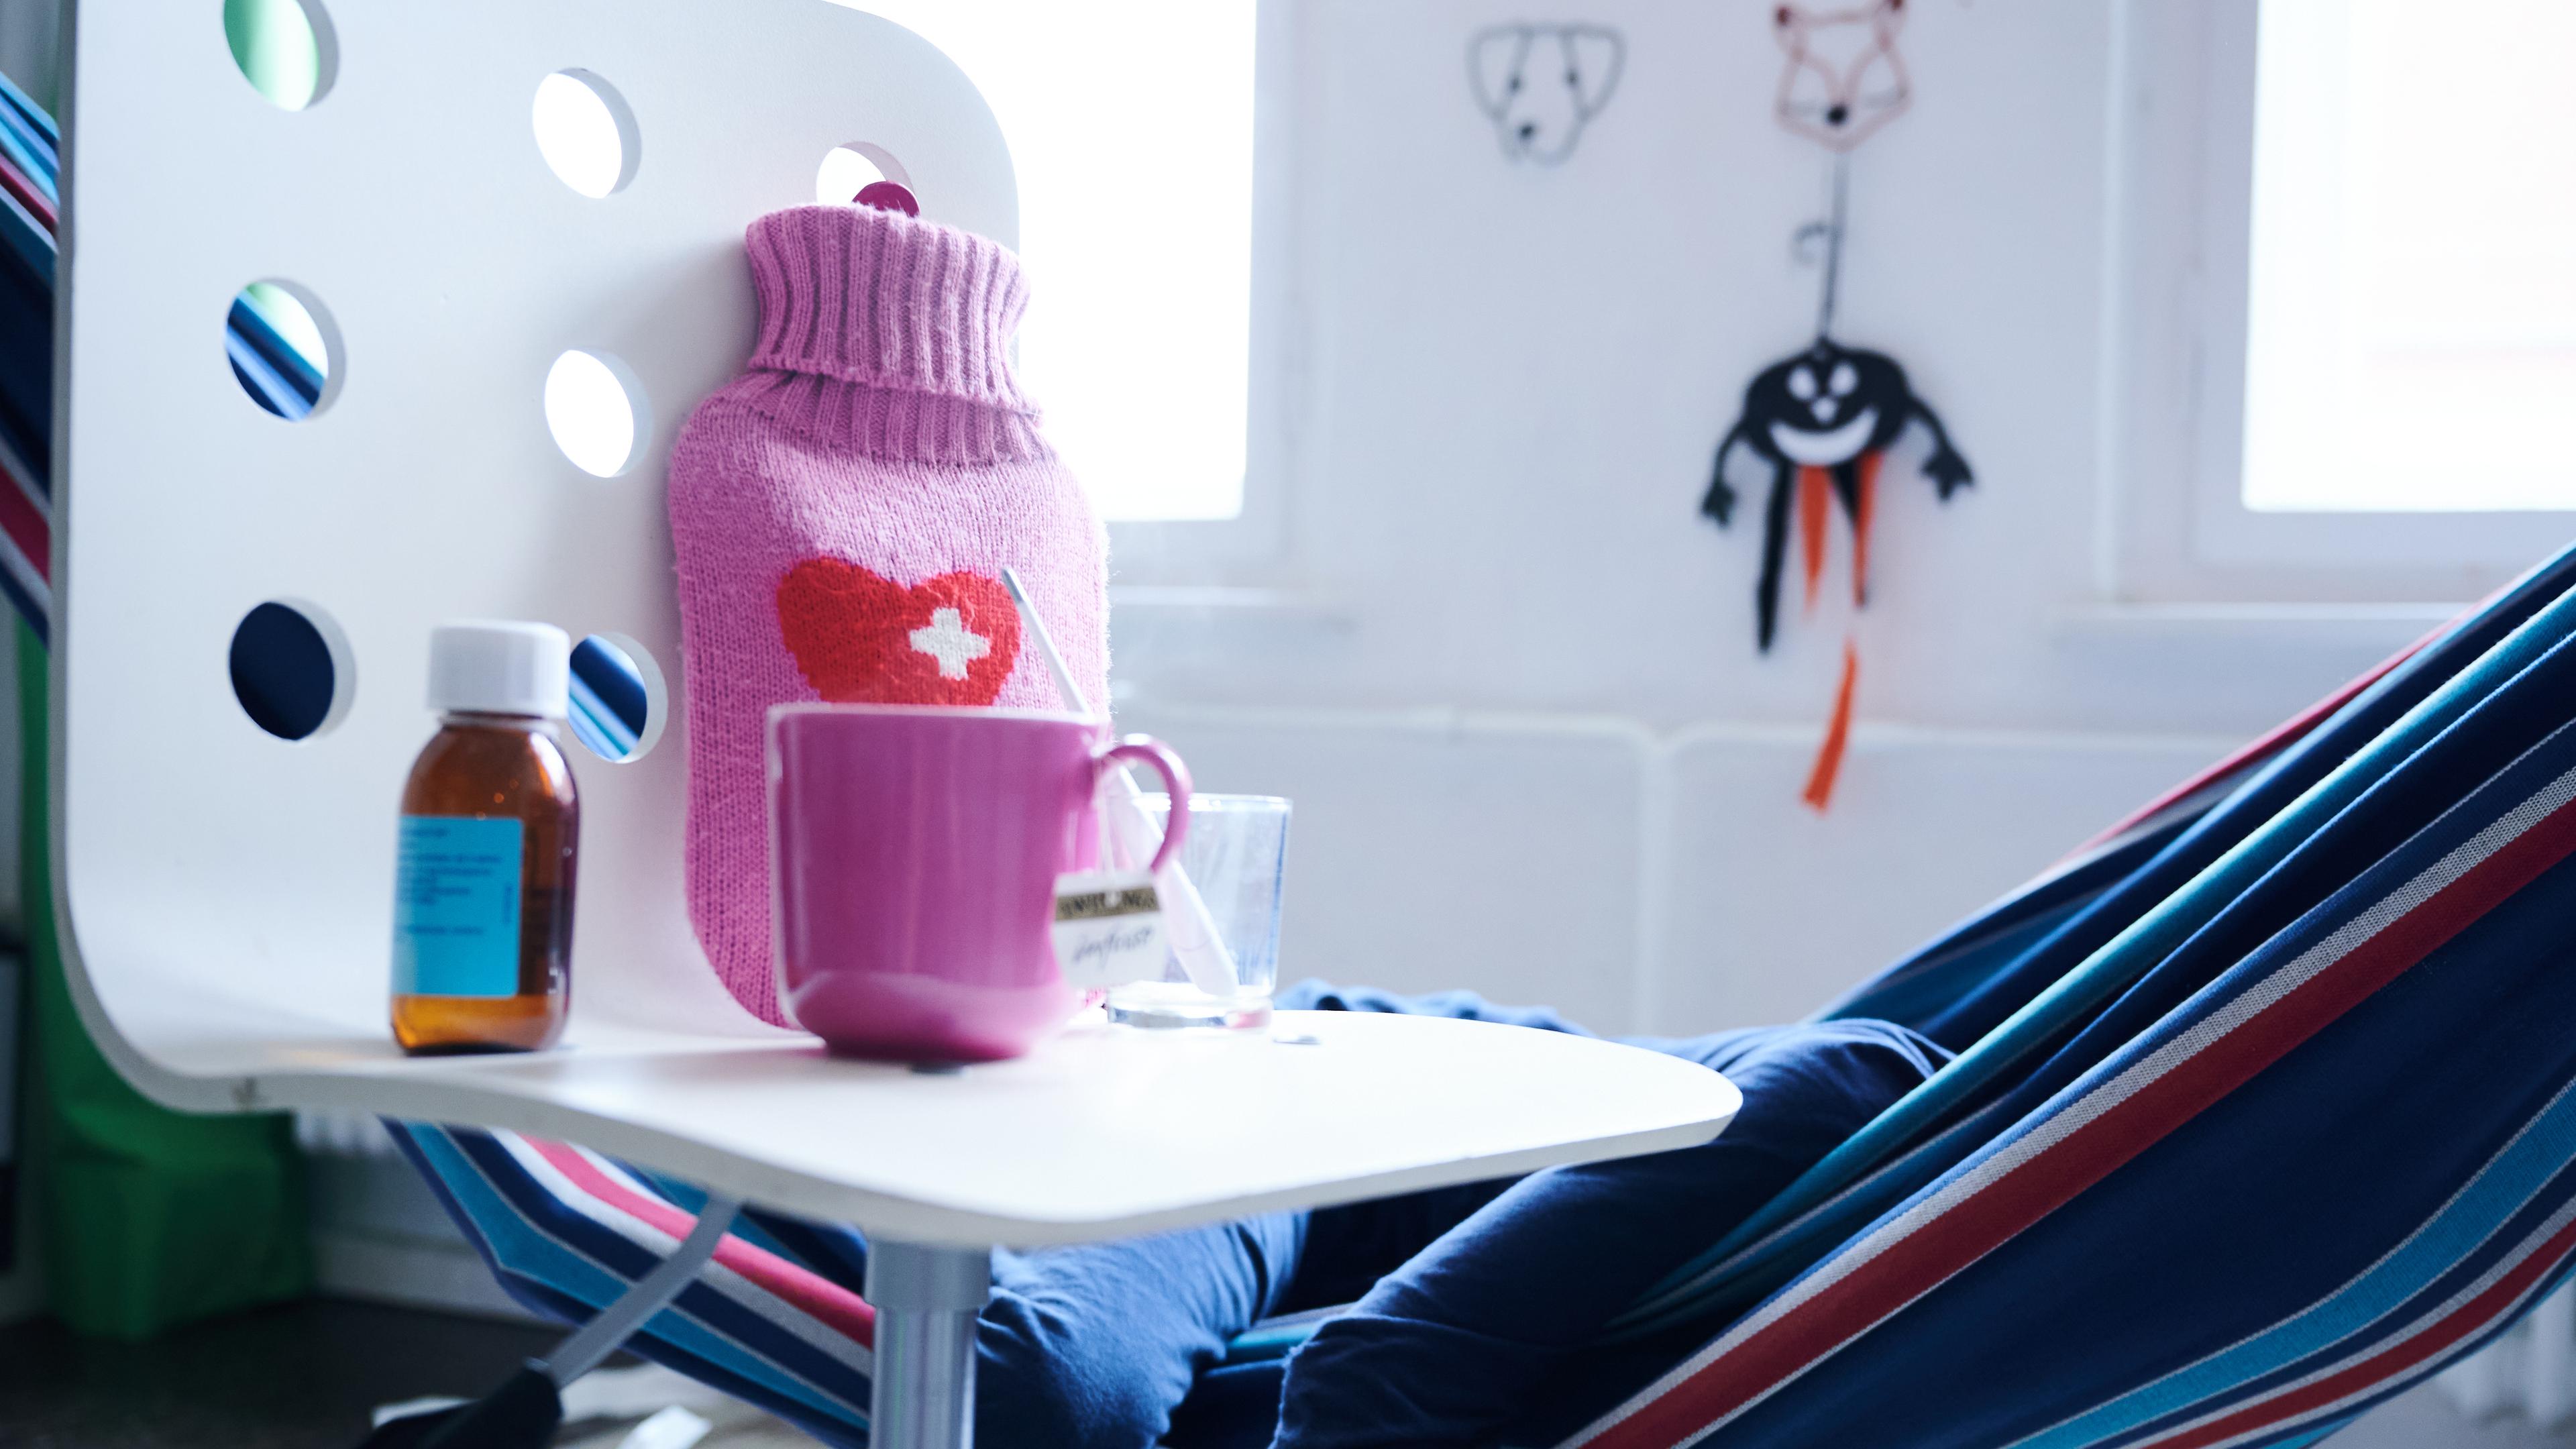  Fieberthermometer, Hustensaft, Wärmflasche und eine Tasse Tee stehen auf einem Stuhl, während ein Kind im Hintergrund in einer Hängematte liegt 